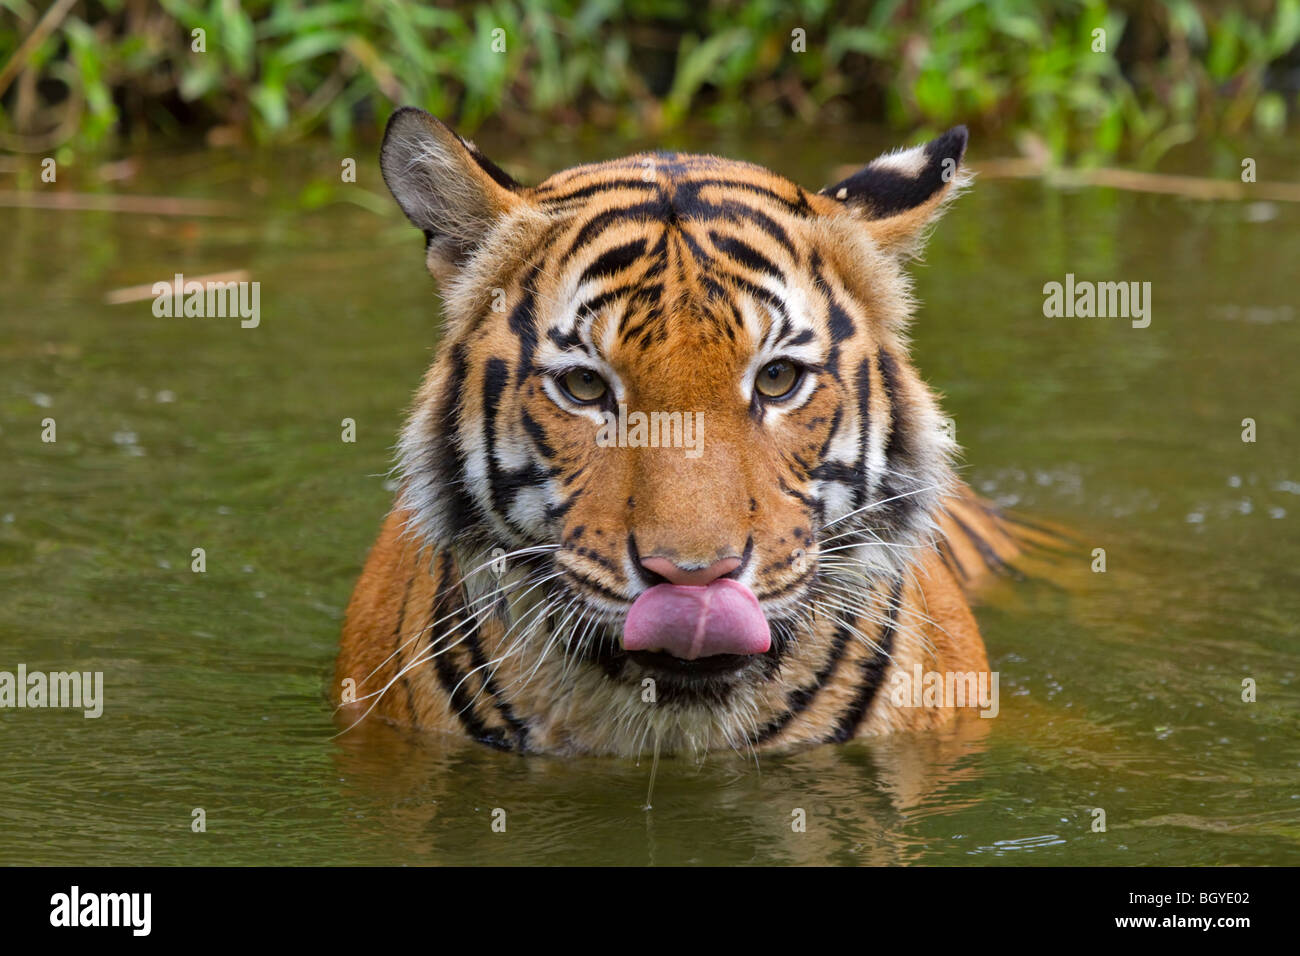 Sumatran tiger (Panthera tigris sumatrae) with tongue out. Stock Photo